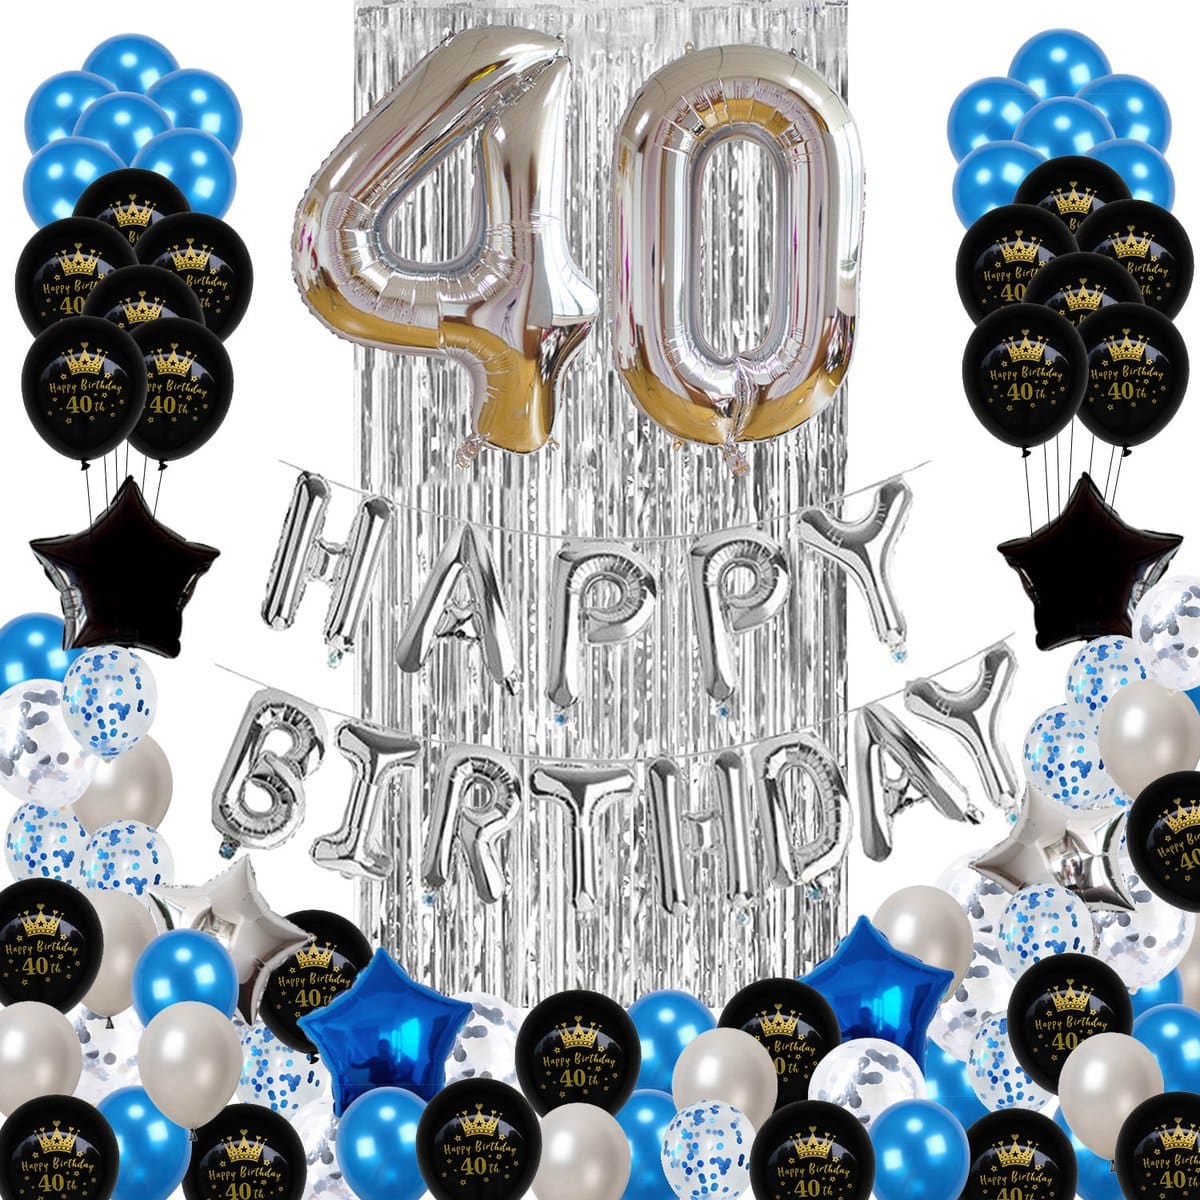 wees gegroet op gang brengen Mobiliseren 40 jaar verjaardag versiering - 40 Jaar Feest Verjaardag Versiering Set  88-delig - Happy Birthday Slinger & Ballonnen - Decoratie Man Vrouw - Blauw  en Zilver - Gallant & More